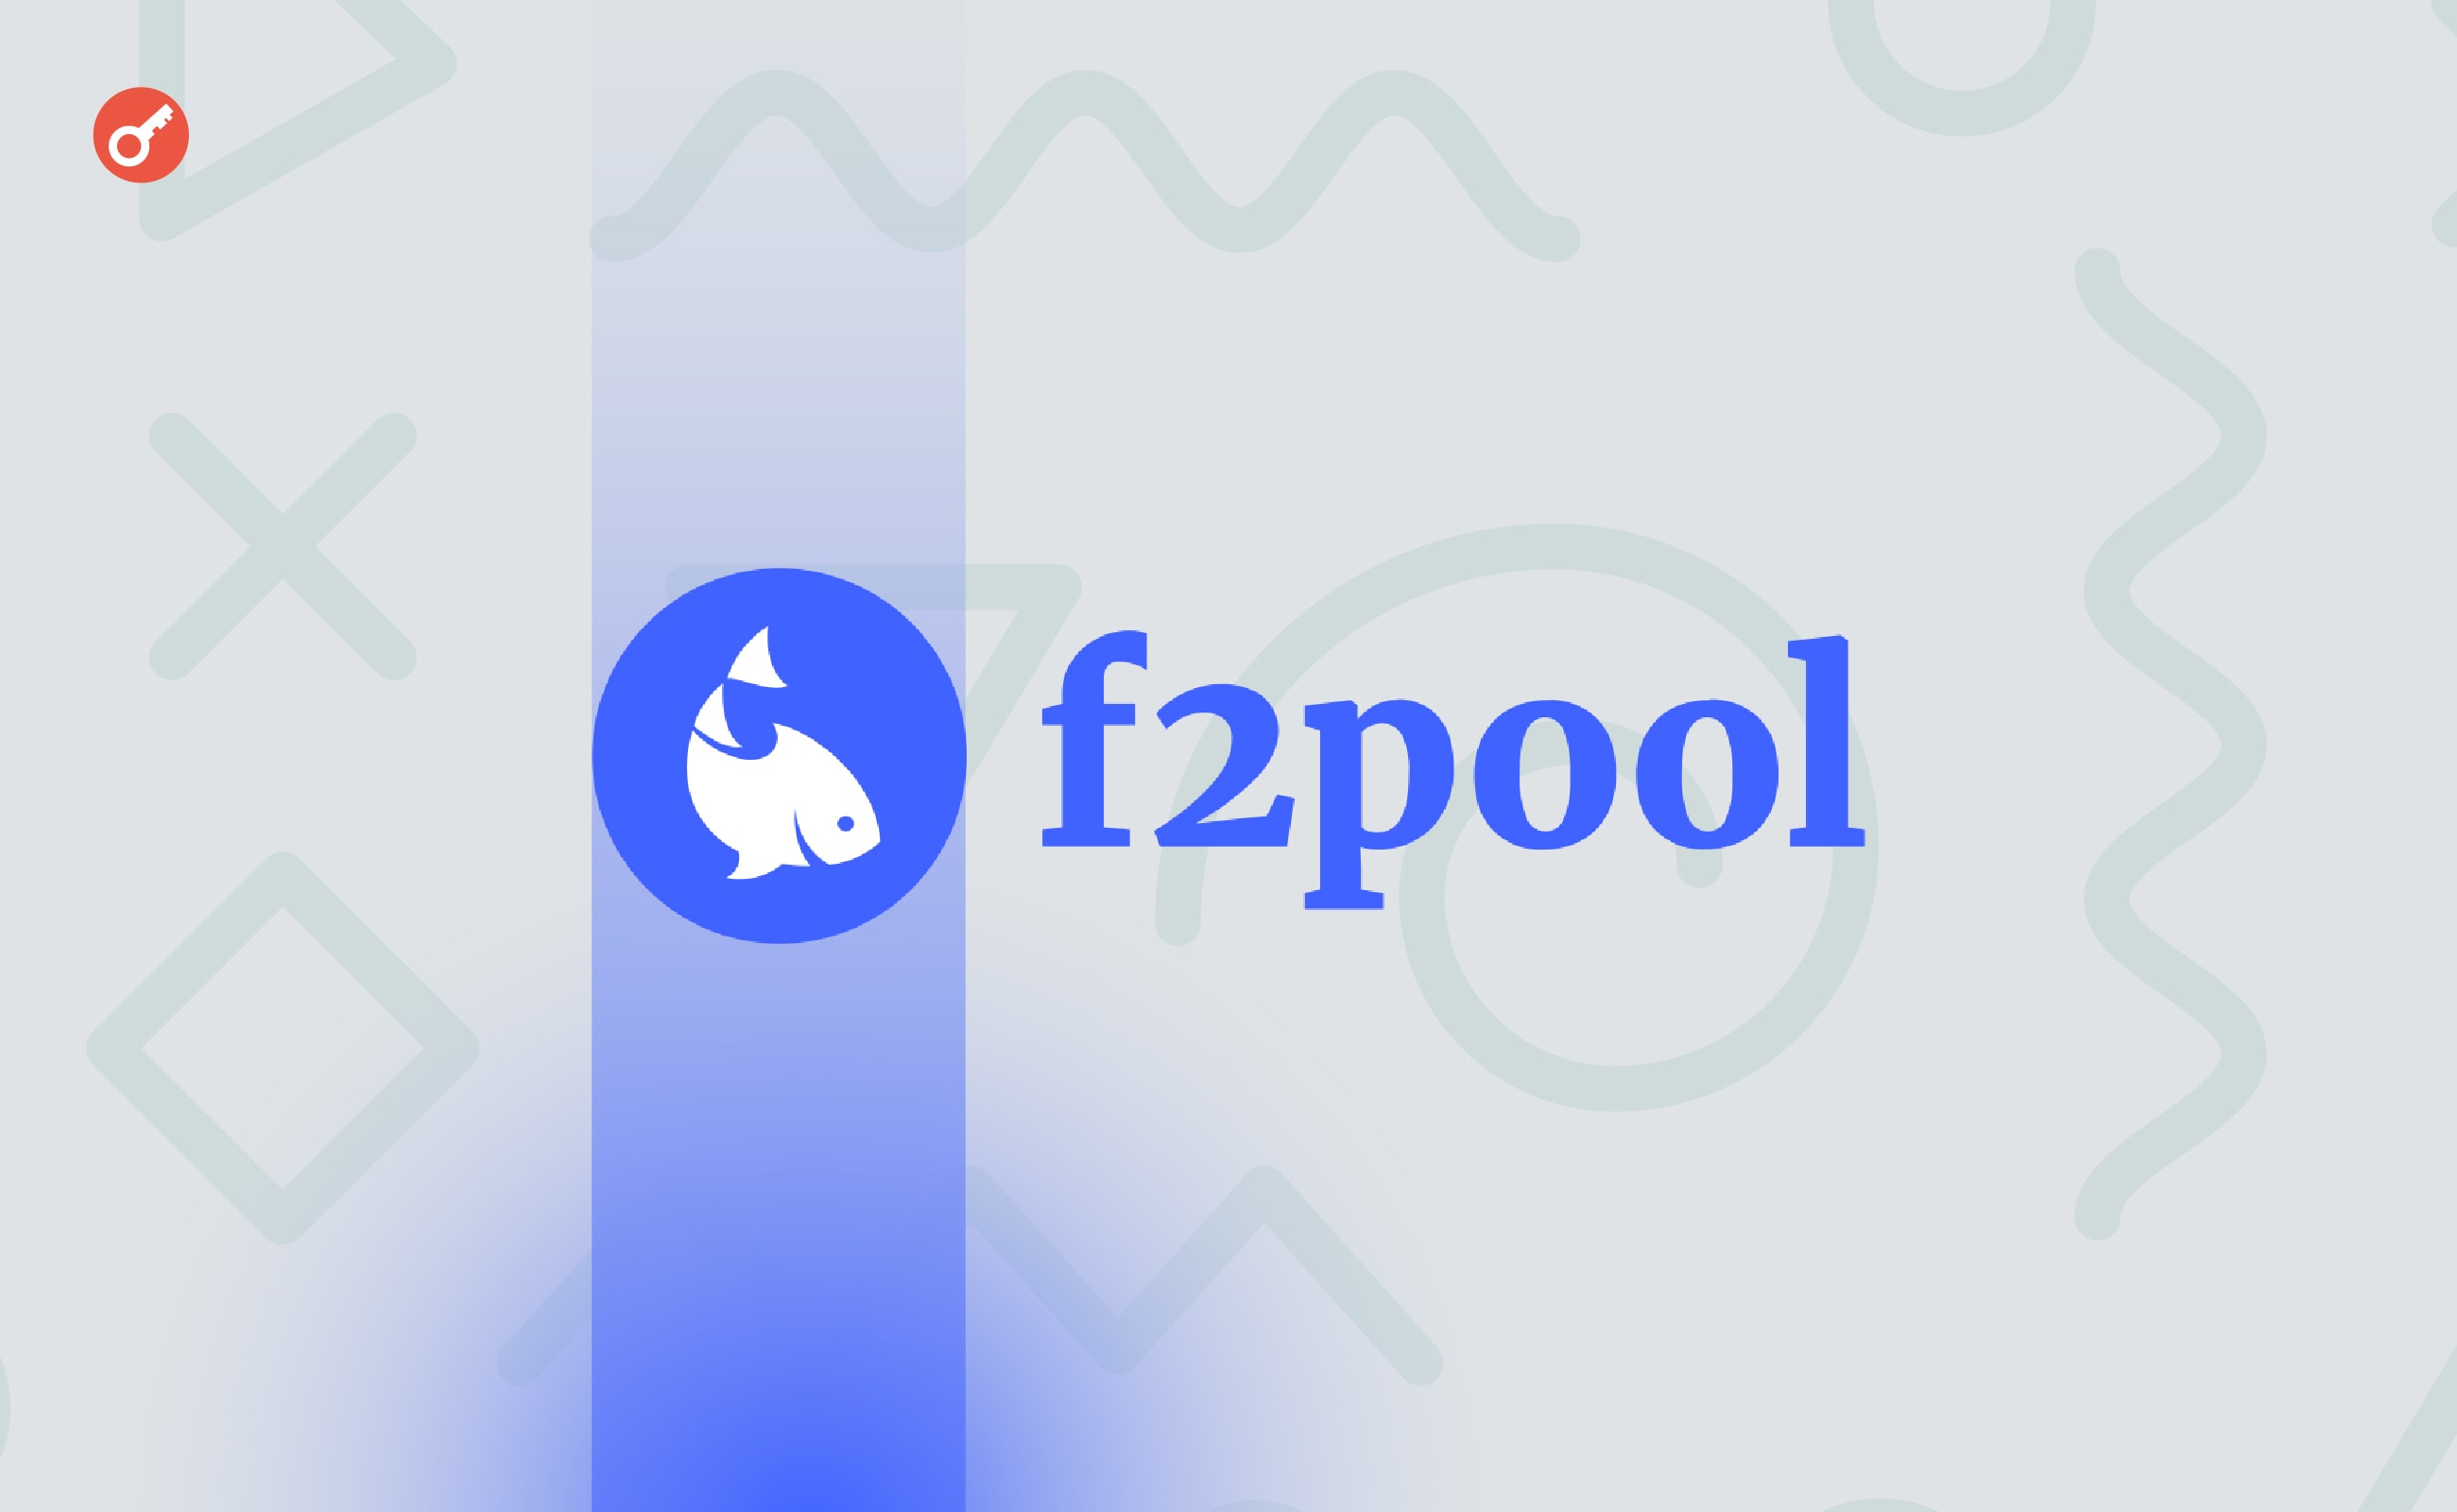 F2Pool визнав блокування транзакцій через санкції OFAC. Головний колаж новини.